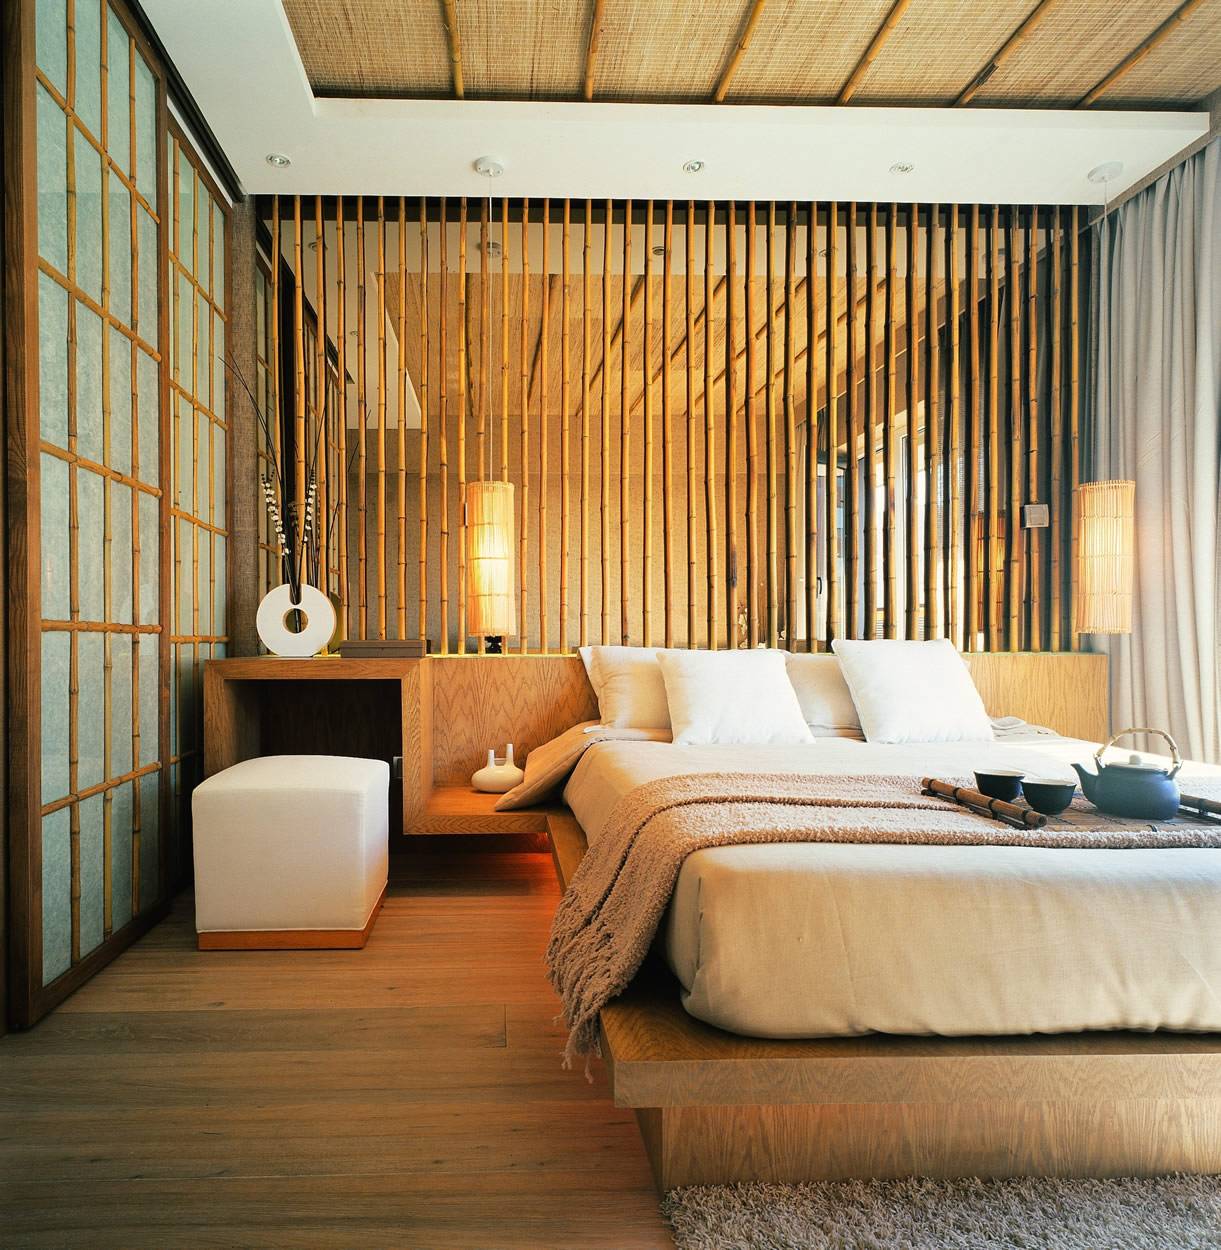 日式卧室背景墙实景图